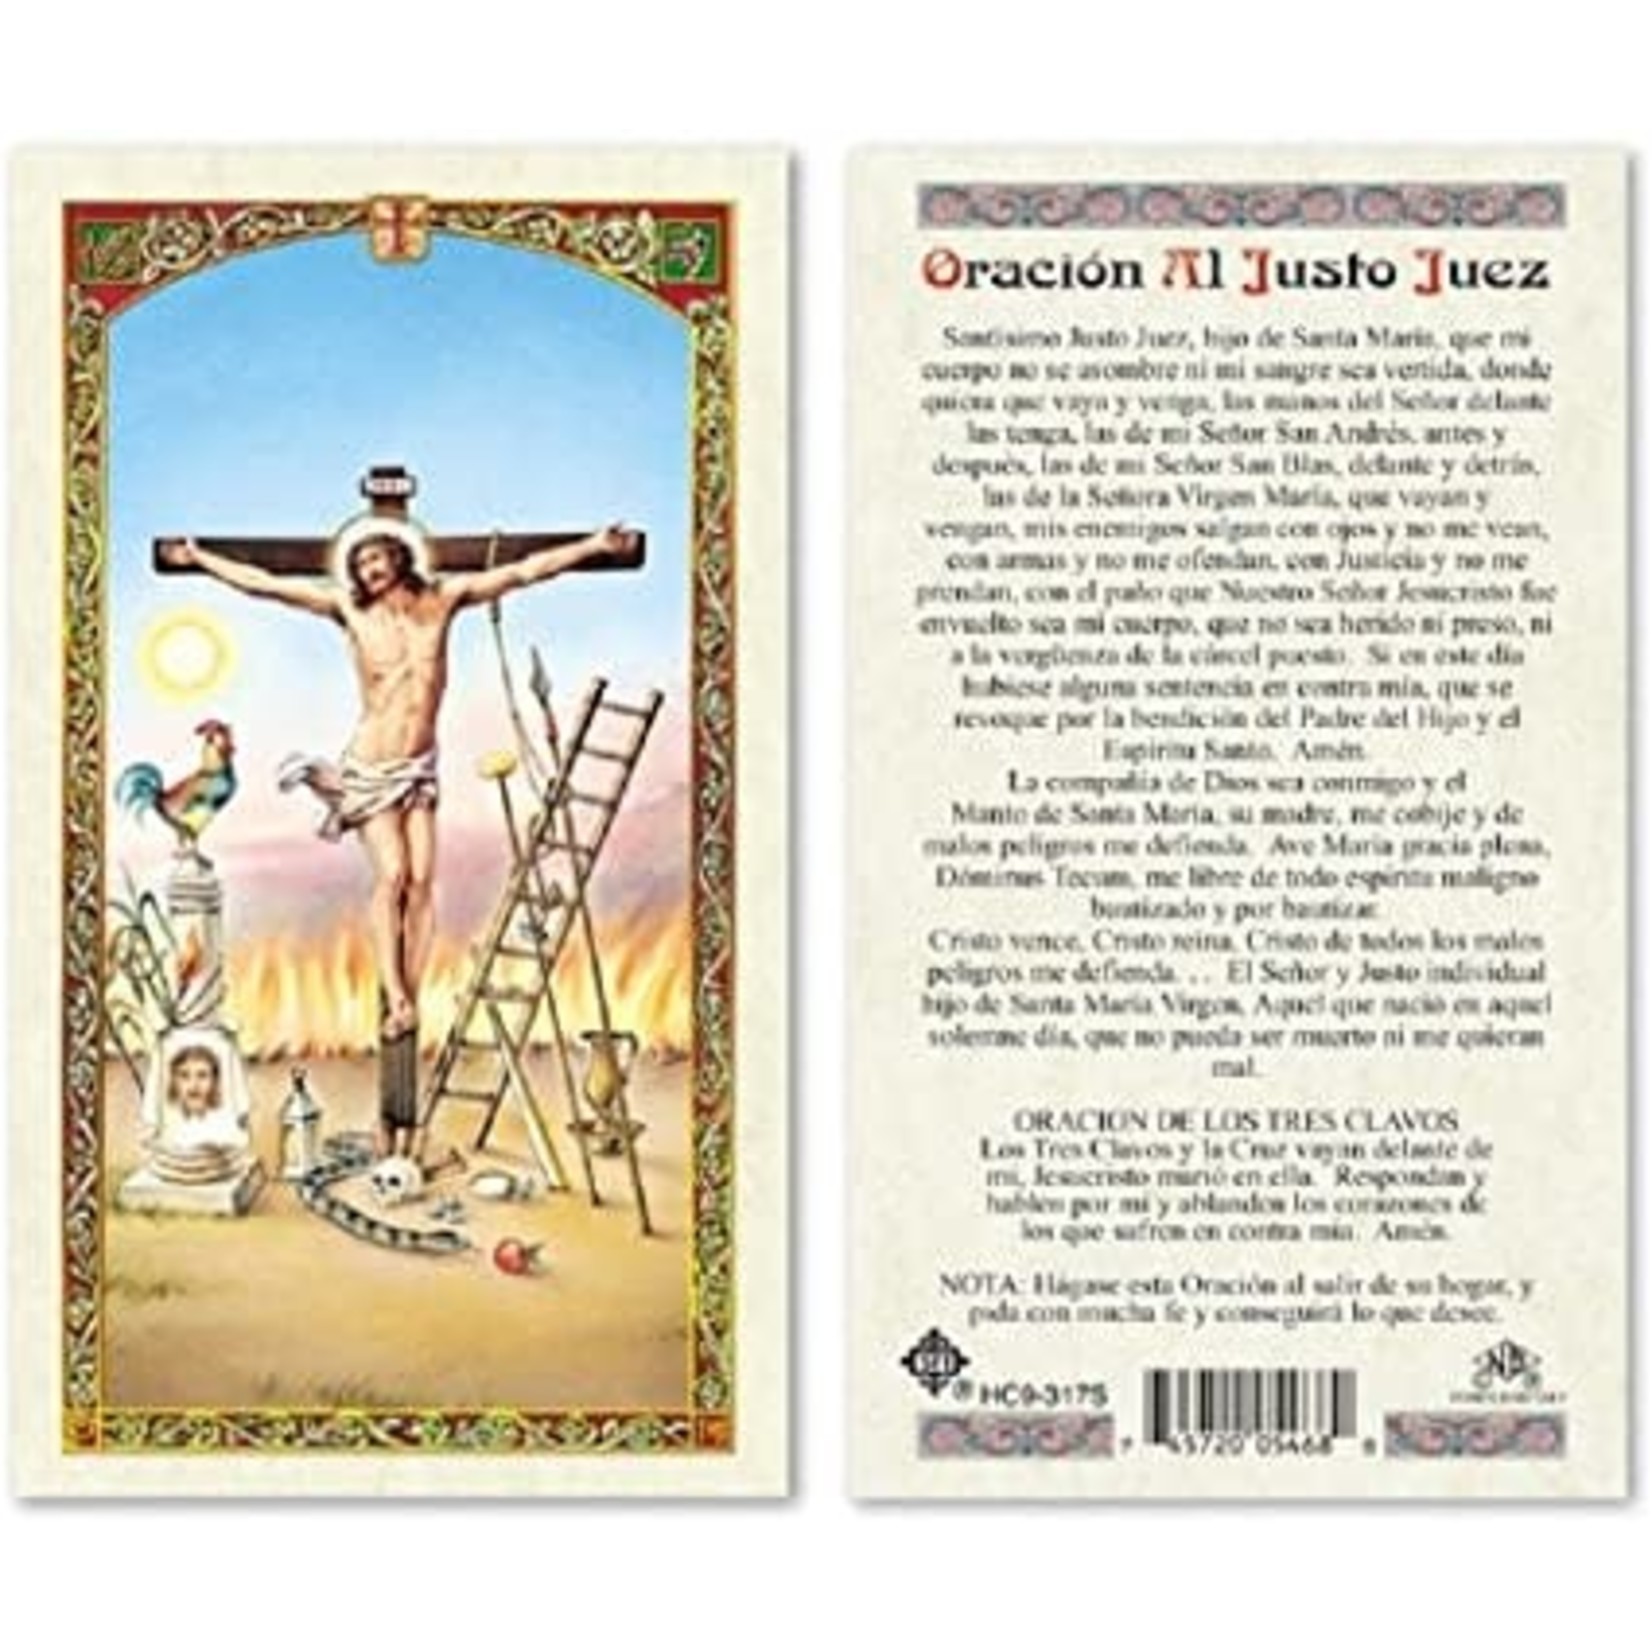 Oración al Justo Juez Prayer Card (Spanish)